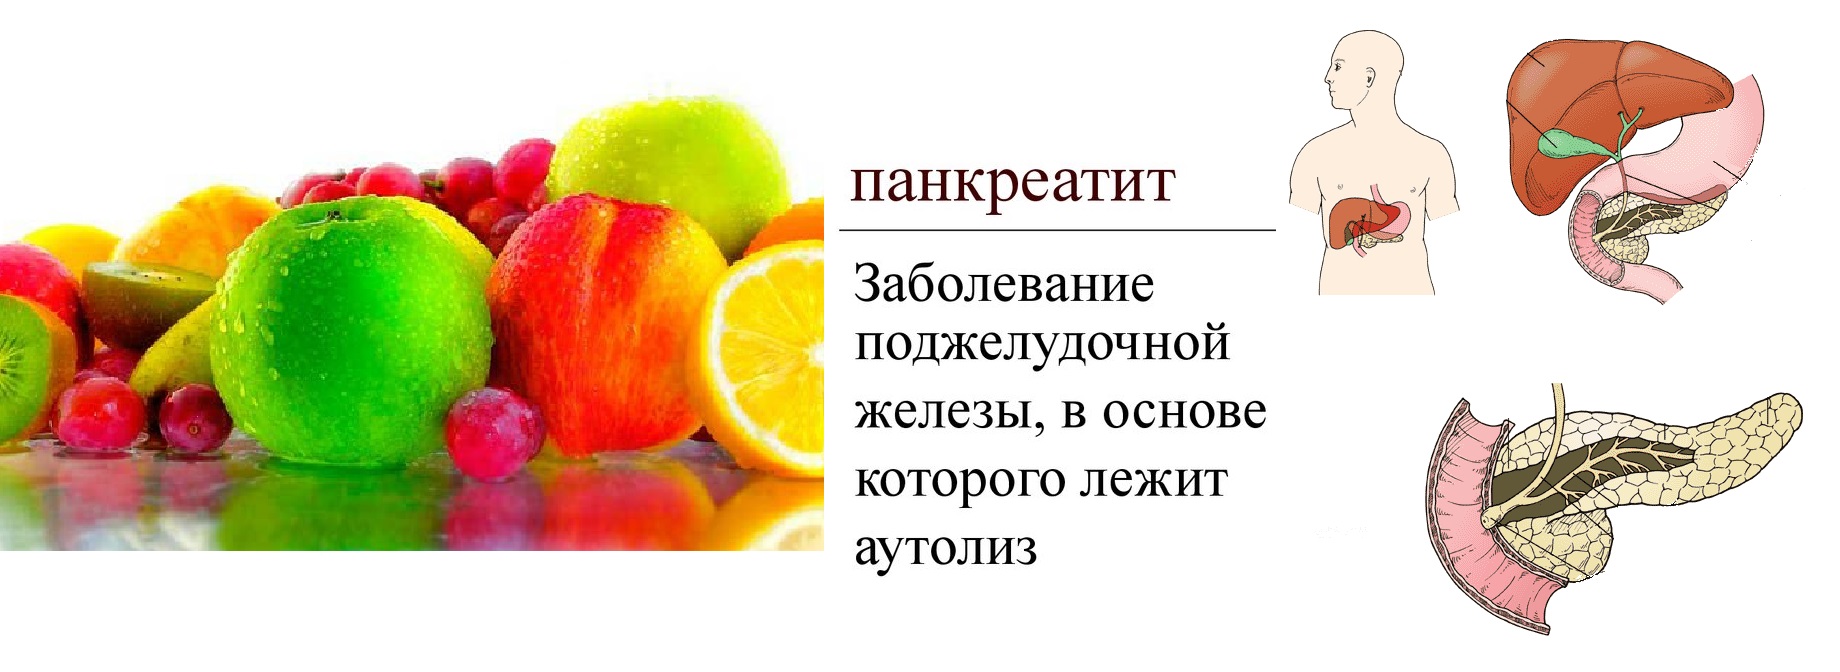 Какие продукты есть поджелудочная. Панкреатит фрукты. Кушать фрукты при панкреатите. Фрукты для поджелудочной железы. Разрешенные фрукты при панкреатите.